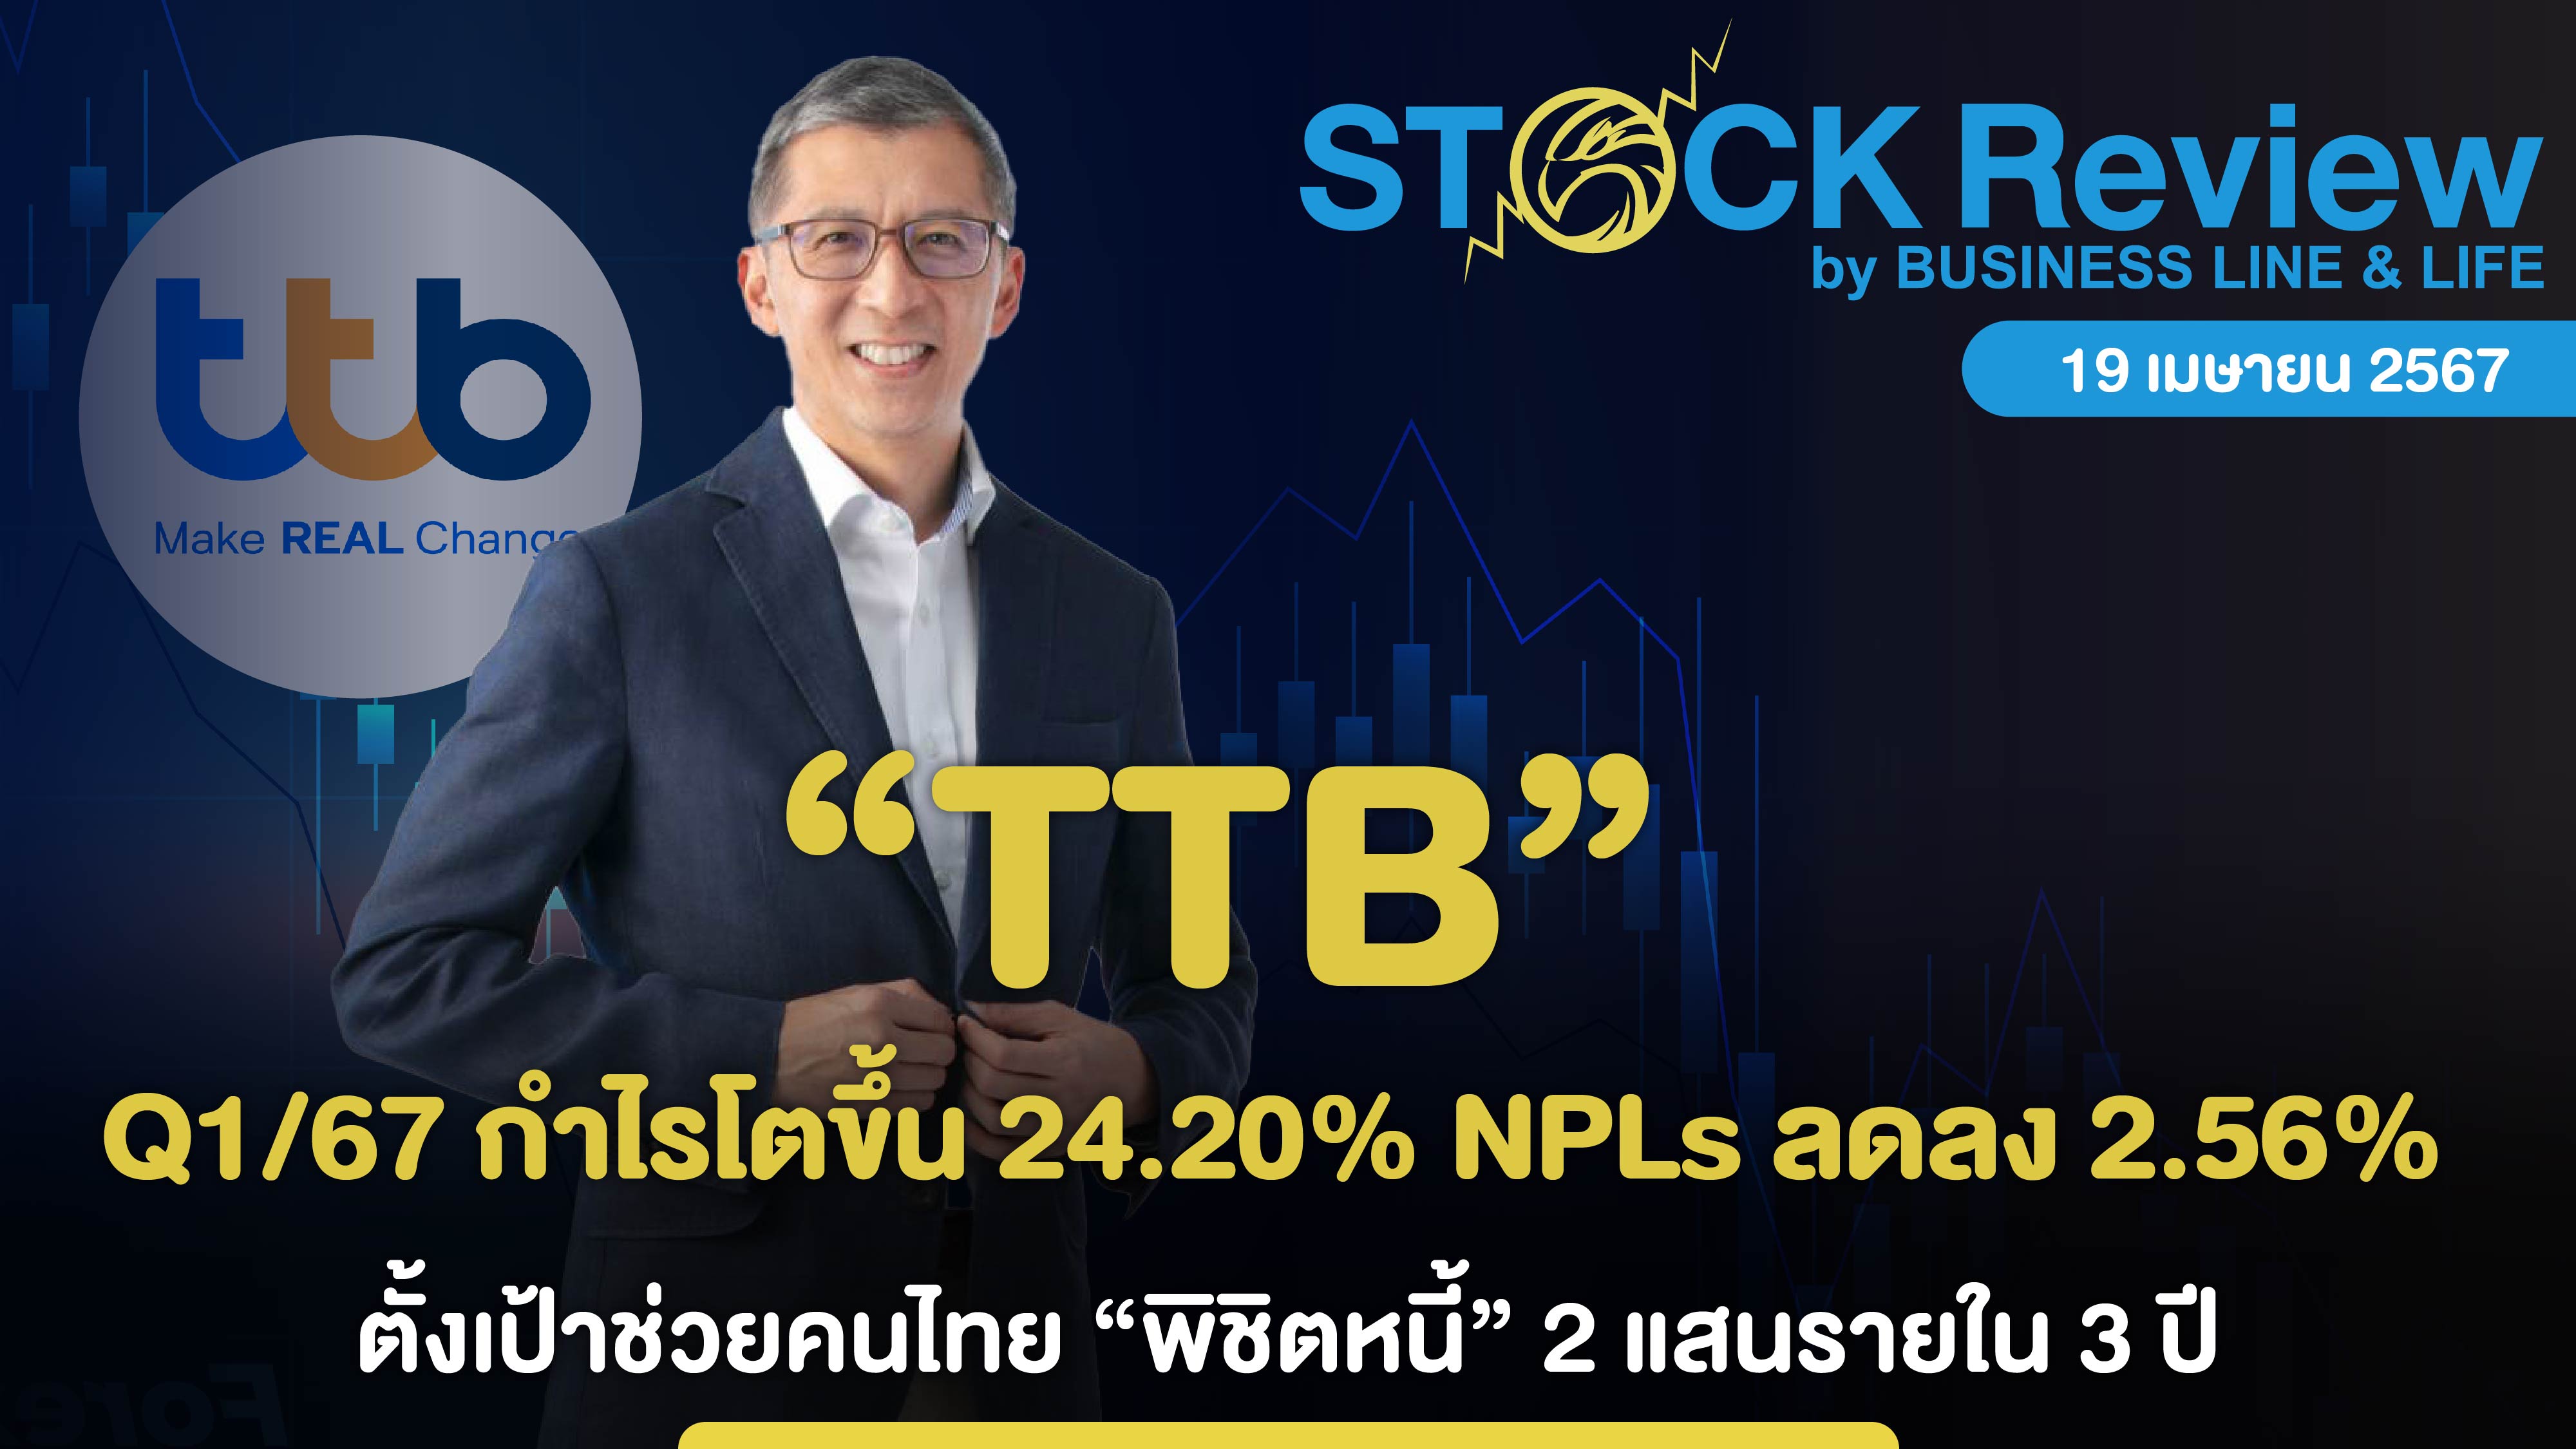 TTB Q1/67 กำไรโตขึ้น 24.20% NPLs ลดลง 2.56%